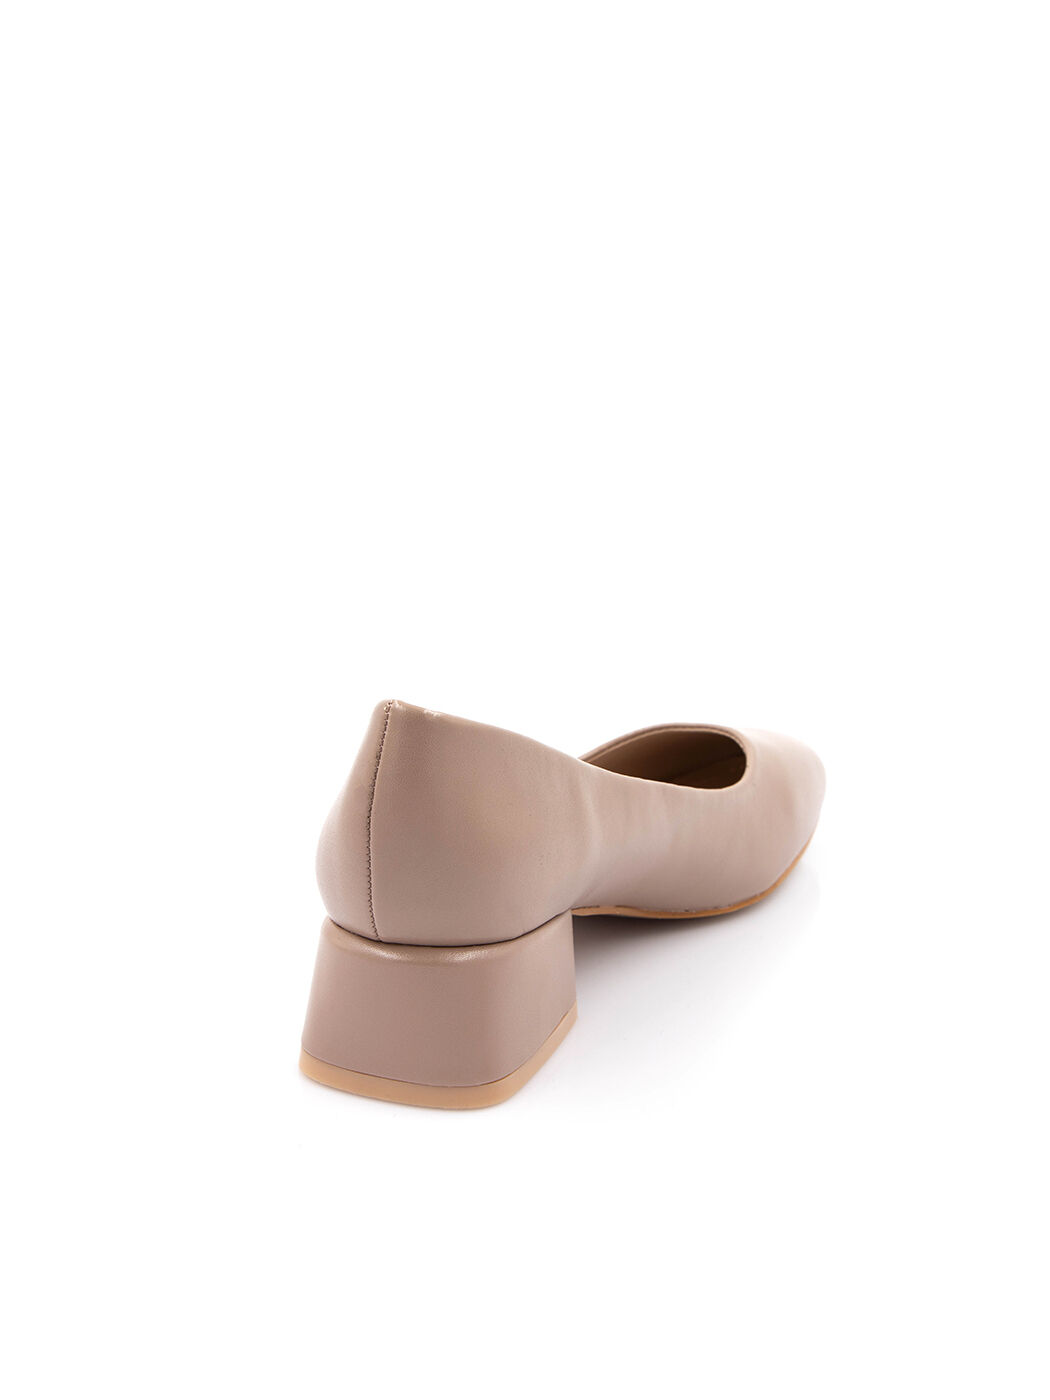 Туфли женские пудра экокожа каблук устойчивый демисезон от производителя 7M вид 1